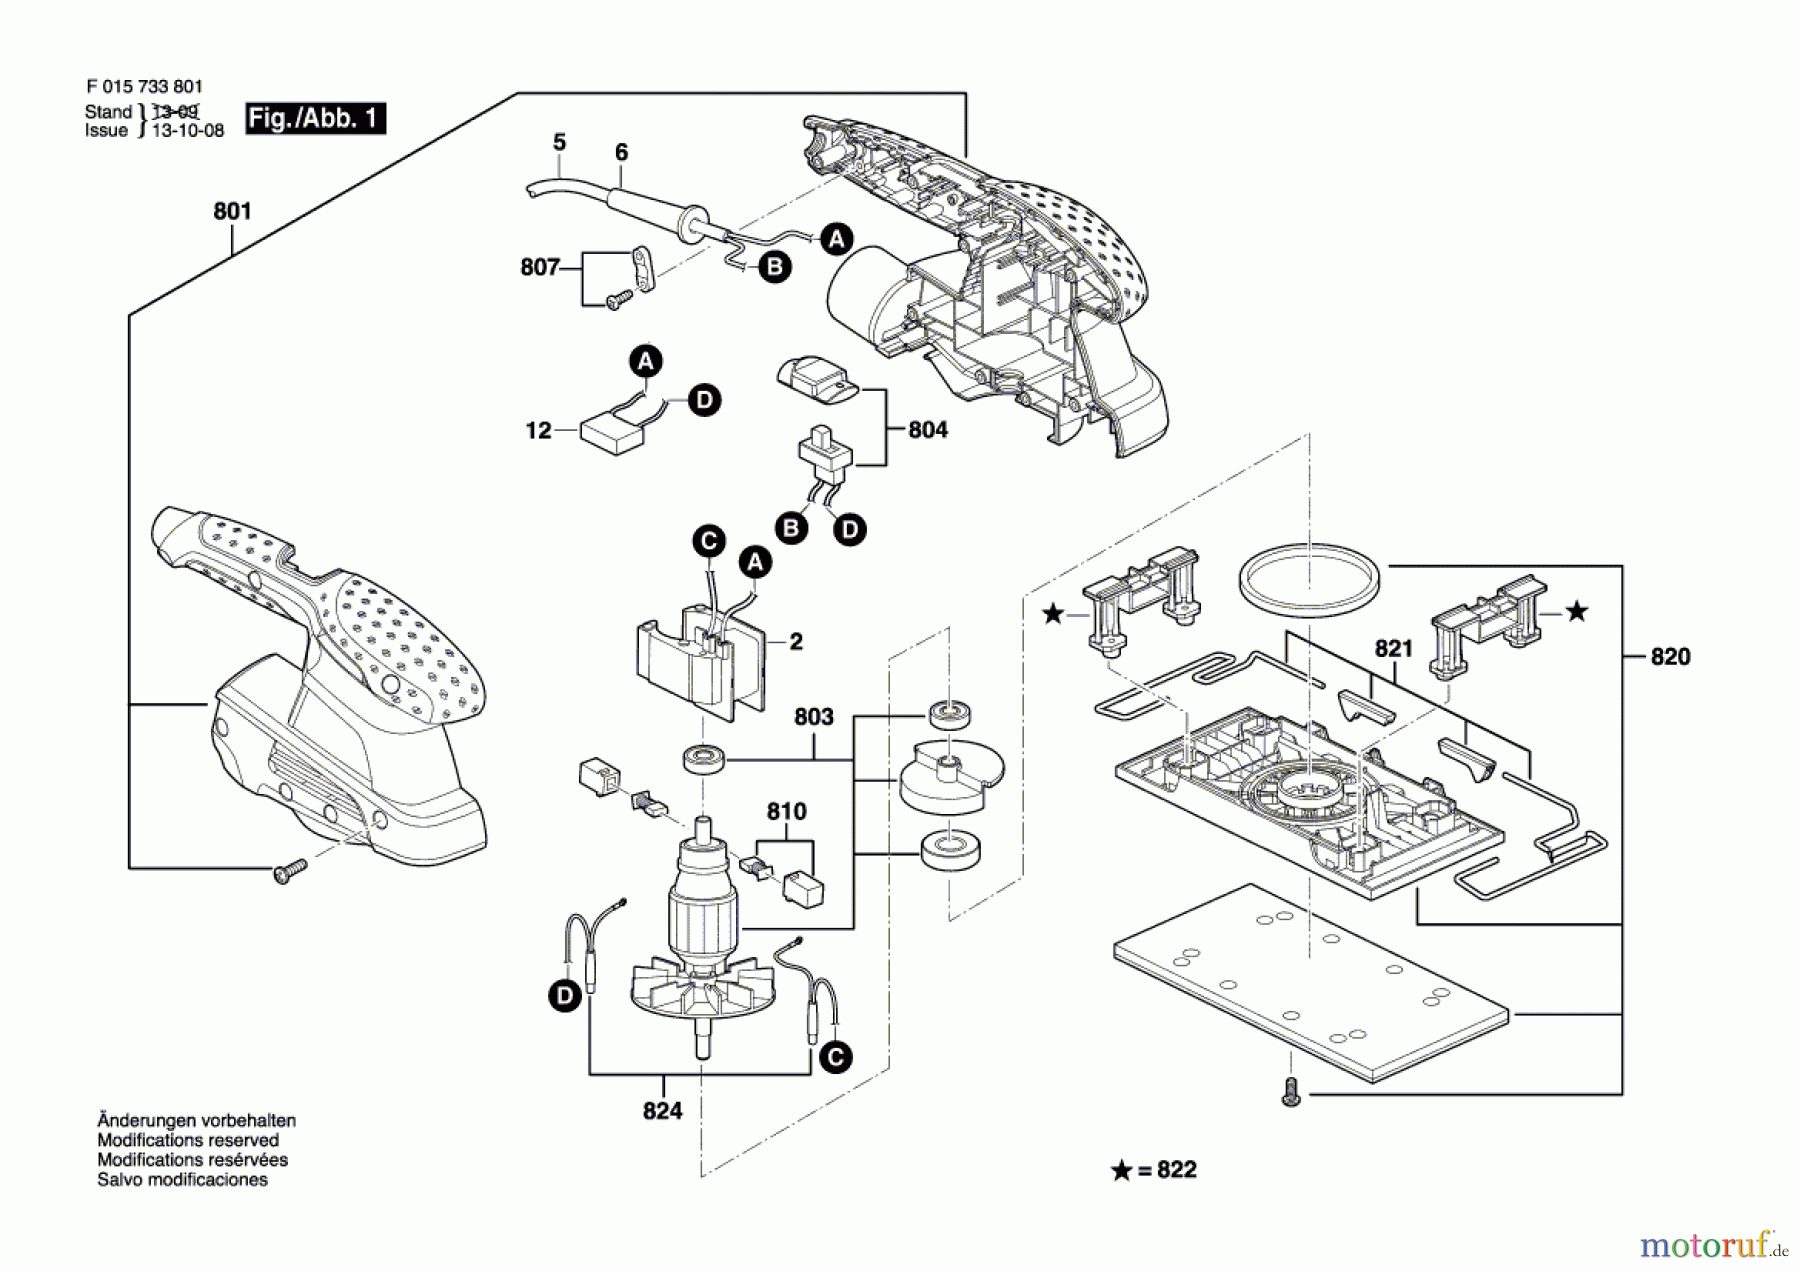  Bosch Werkzeug Schwingschleifer 7338 Seite 1